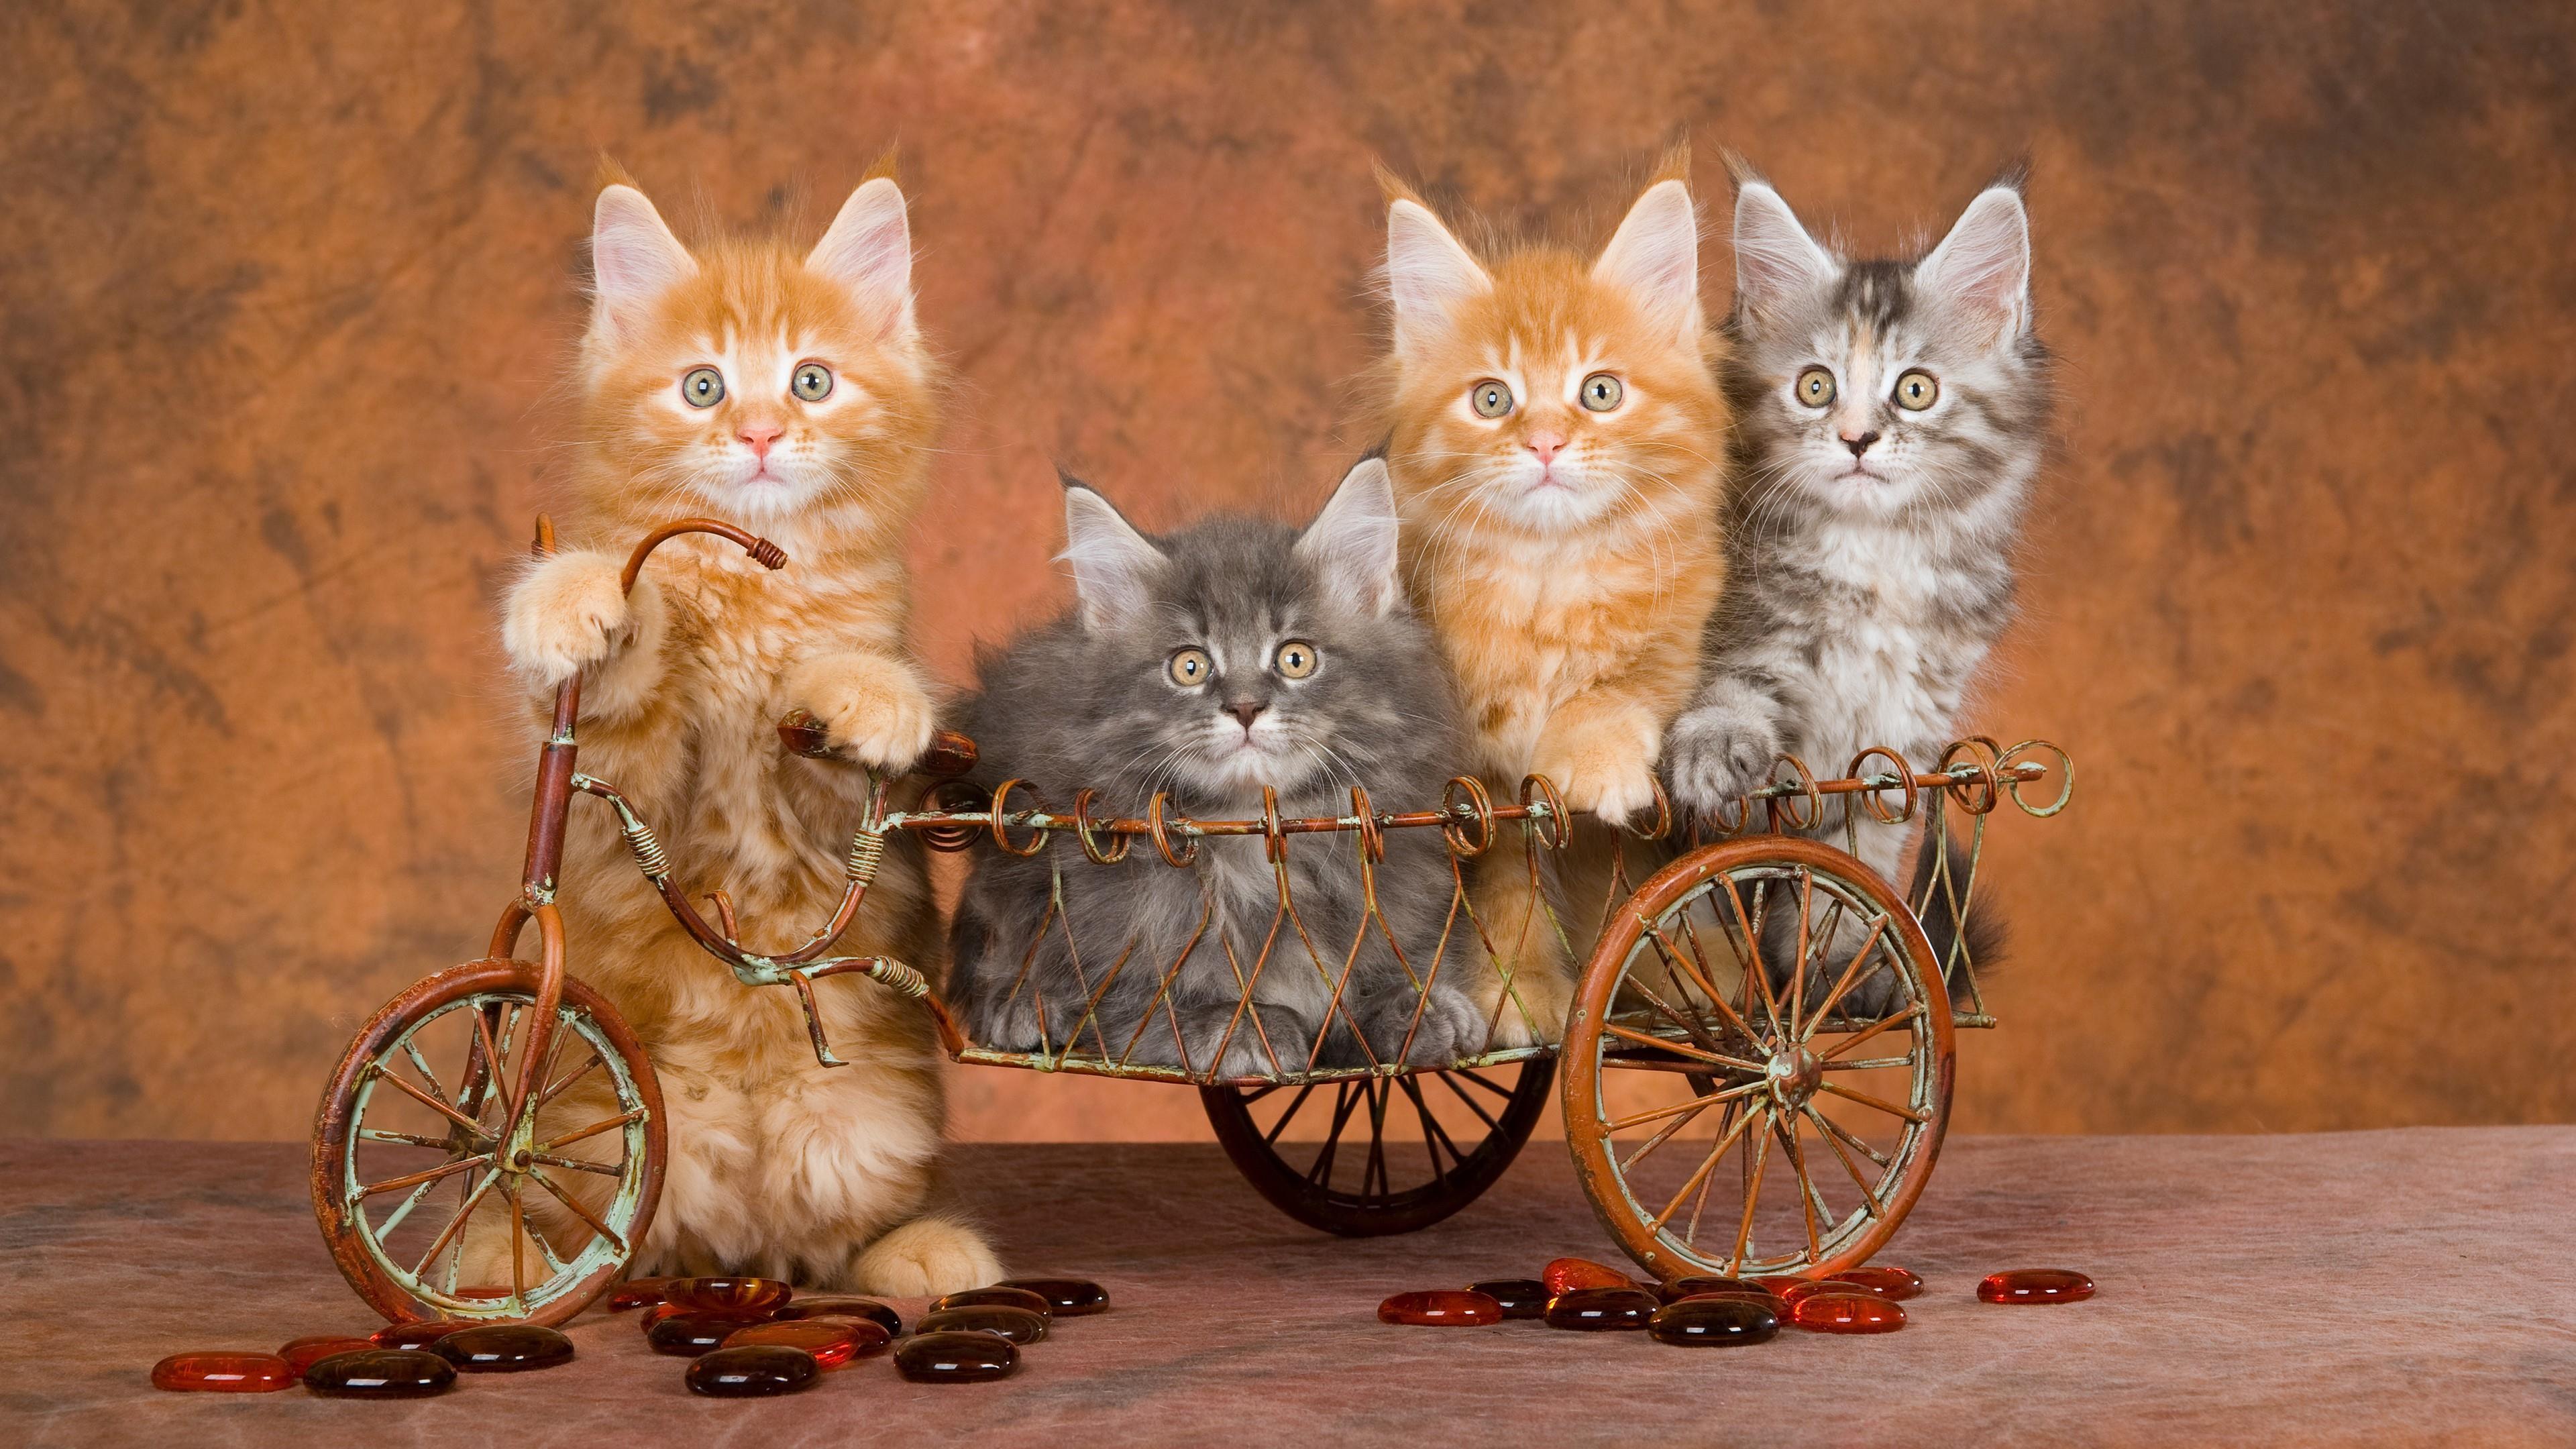 Cute Kitten Wallpaper - Cats On Bike , HD Wallpaper & Backgrounds